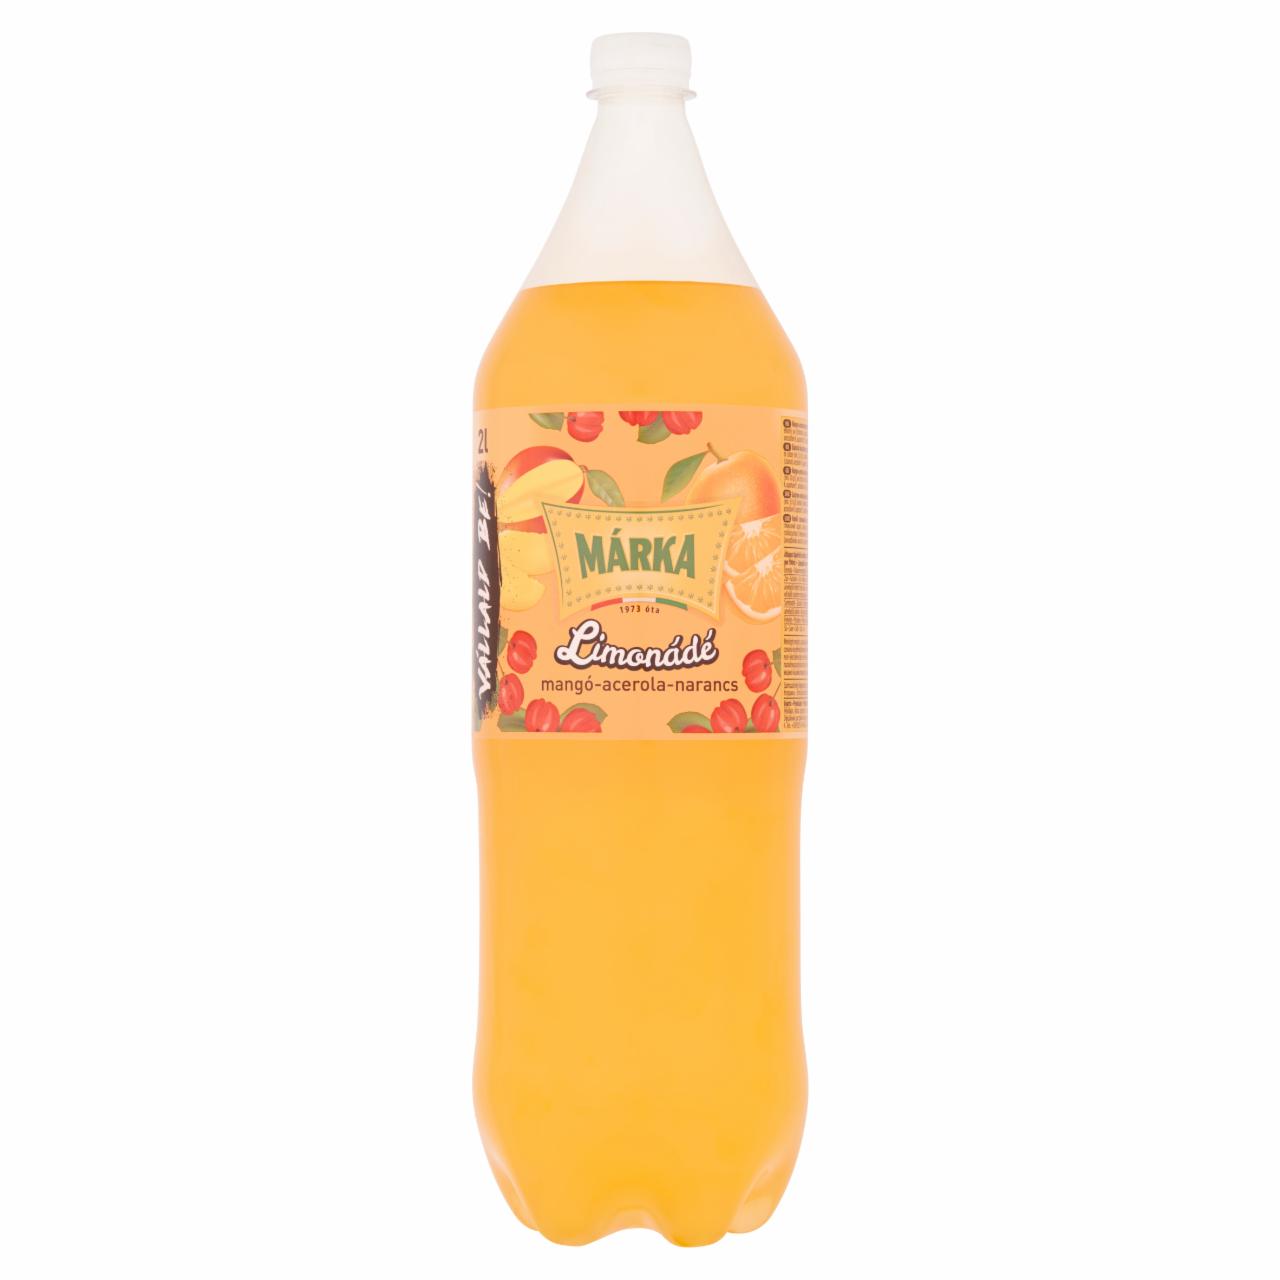 Képek - Márka Limonádé mangó-acerola-narancs ízű szénsavas üdítőital cukorral és édesítőszerekkel 2 l